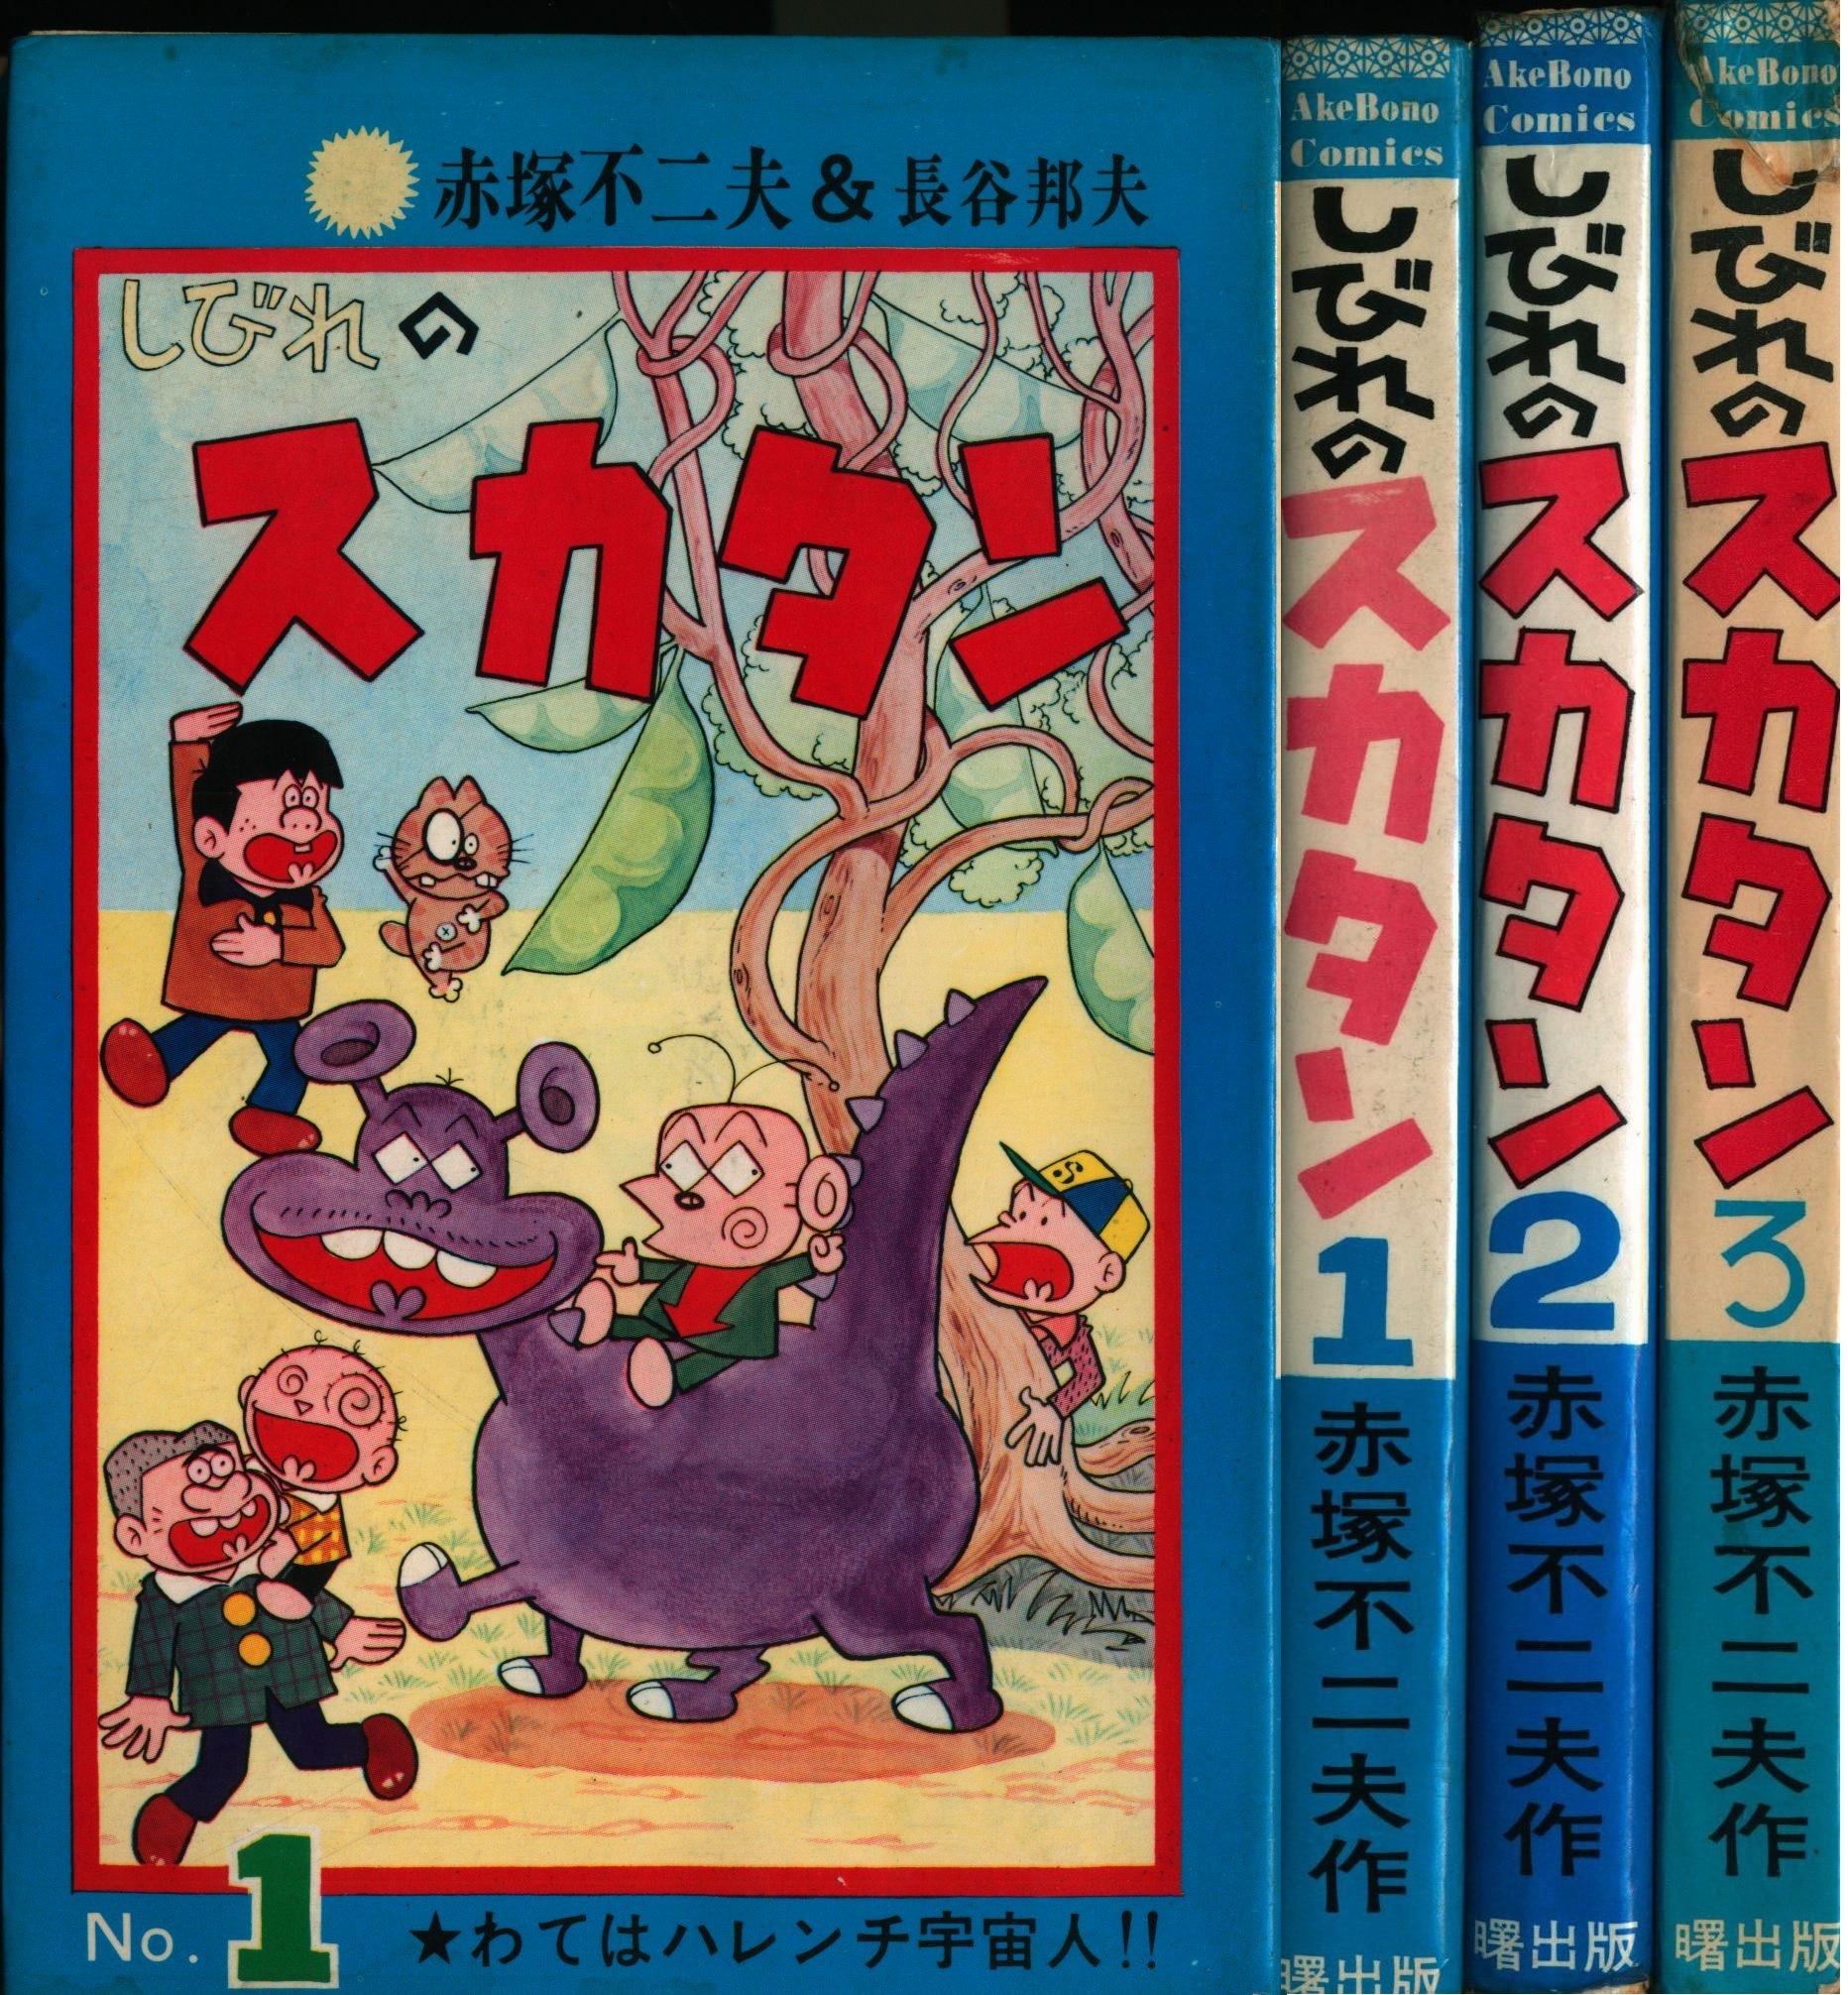 曙出版 Akebono-Comics 赤塚不二夫 しびれのスカタン全3巻 再版セット